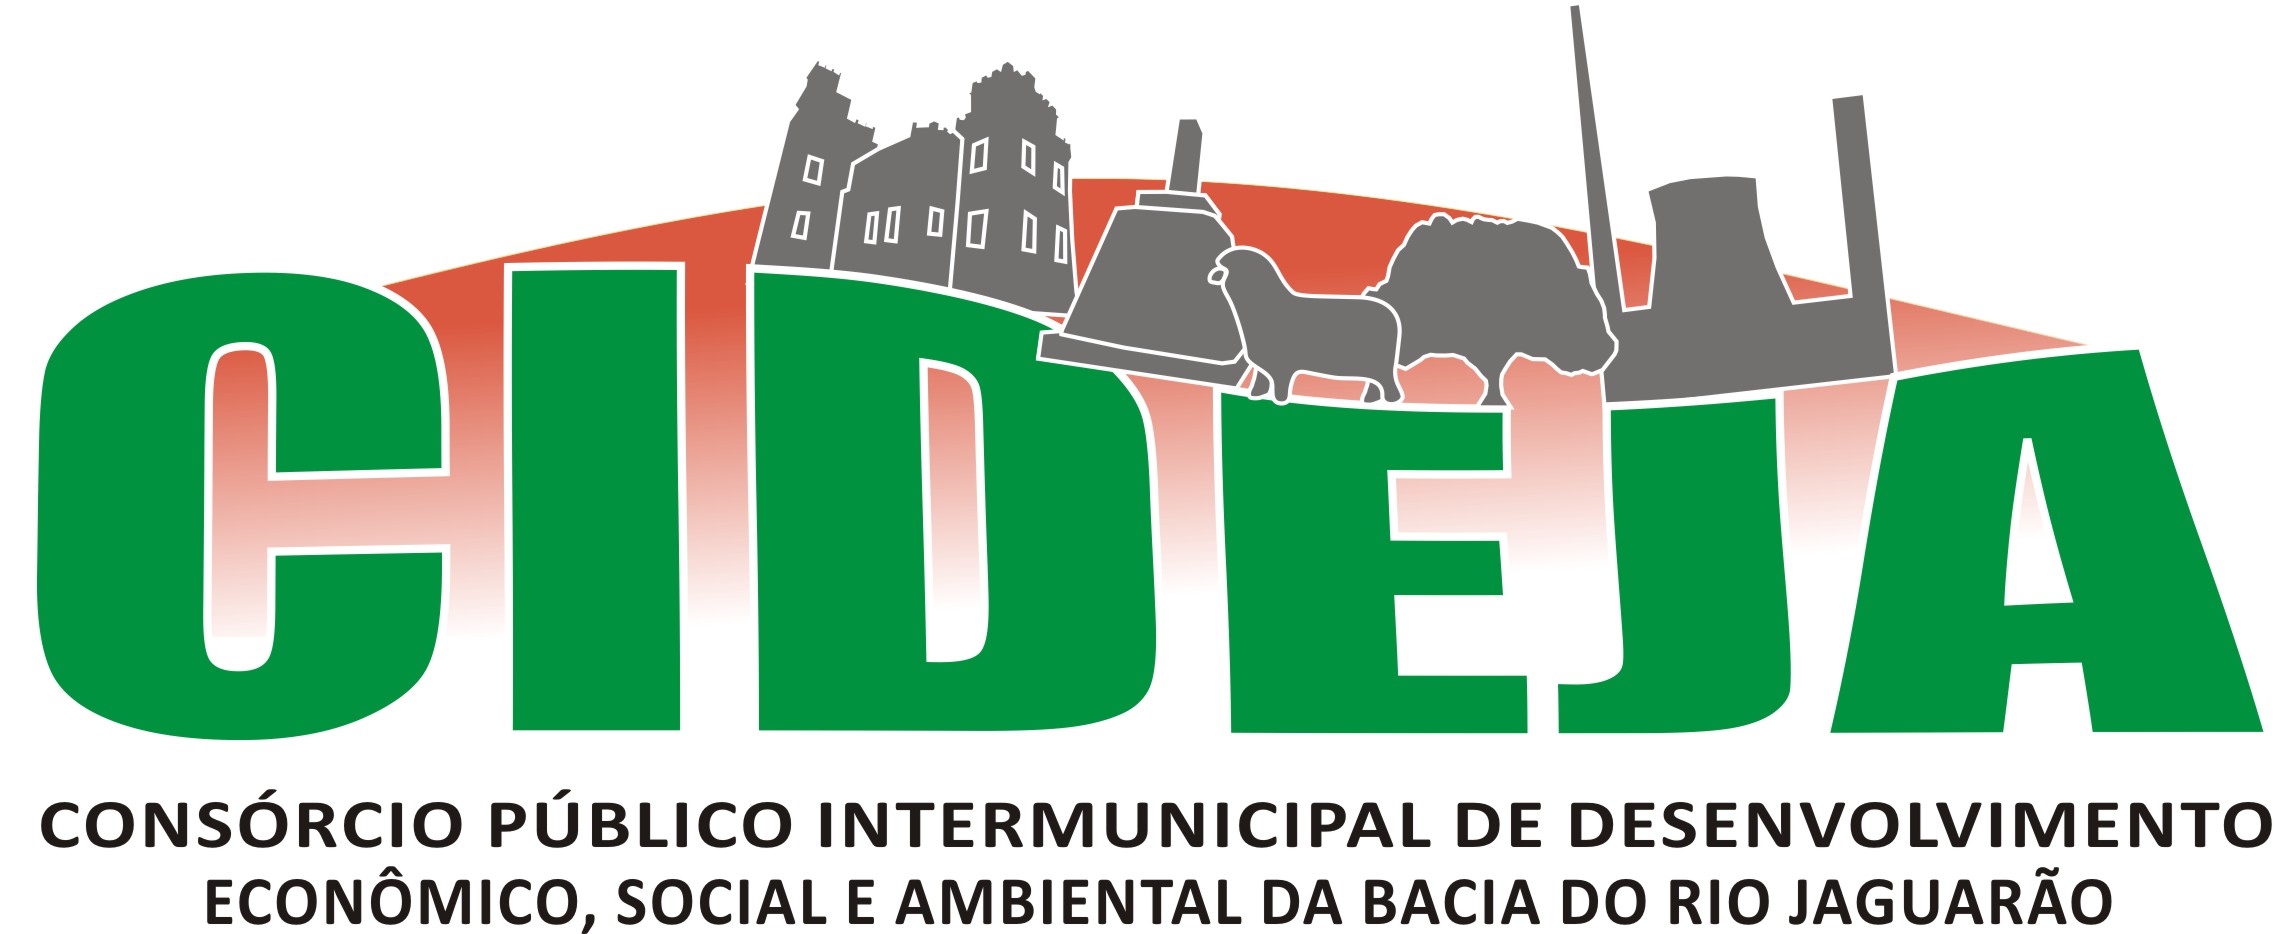 Logo_cideja_certo.jpg